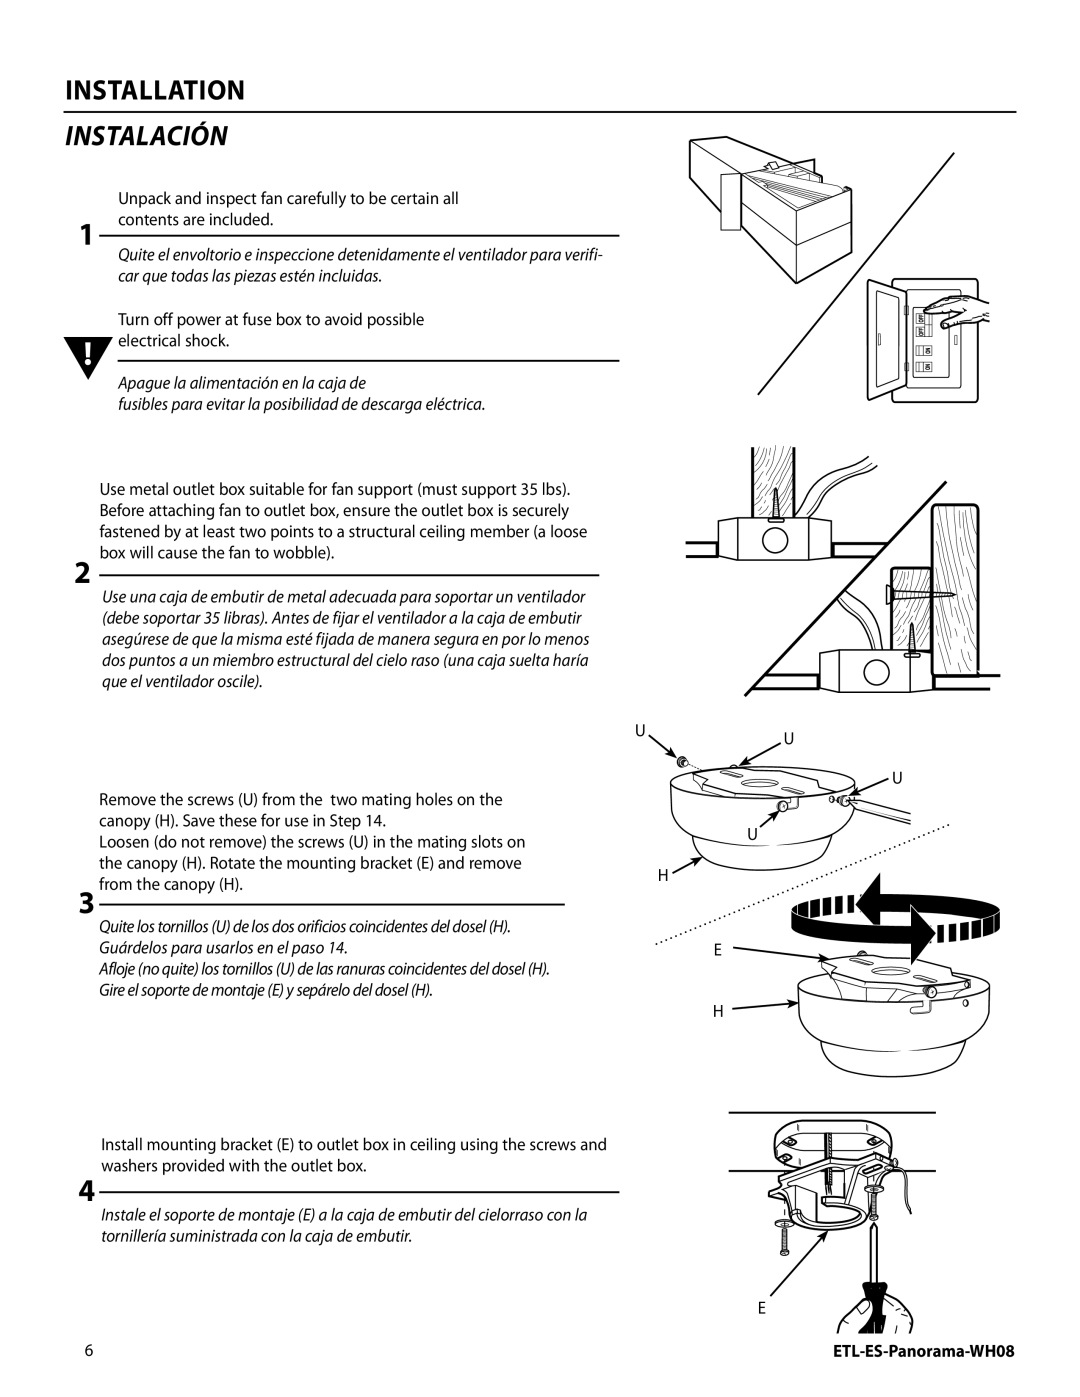 Westinghouse WH08 installation instructions Installation, instalación, Apague la alimentación en la caja de 